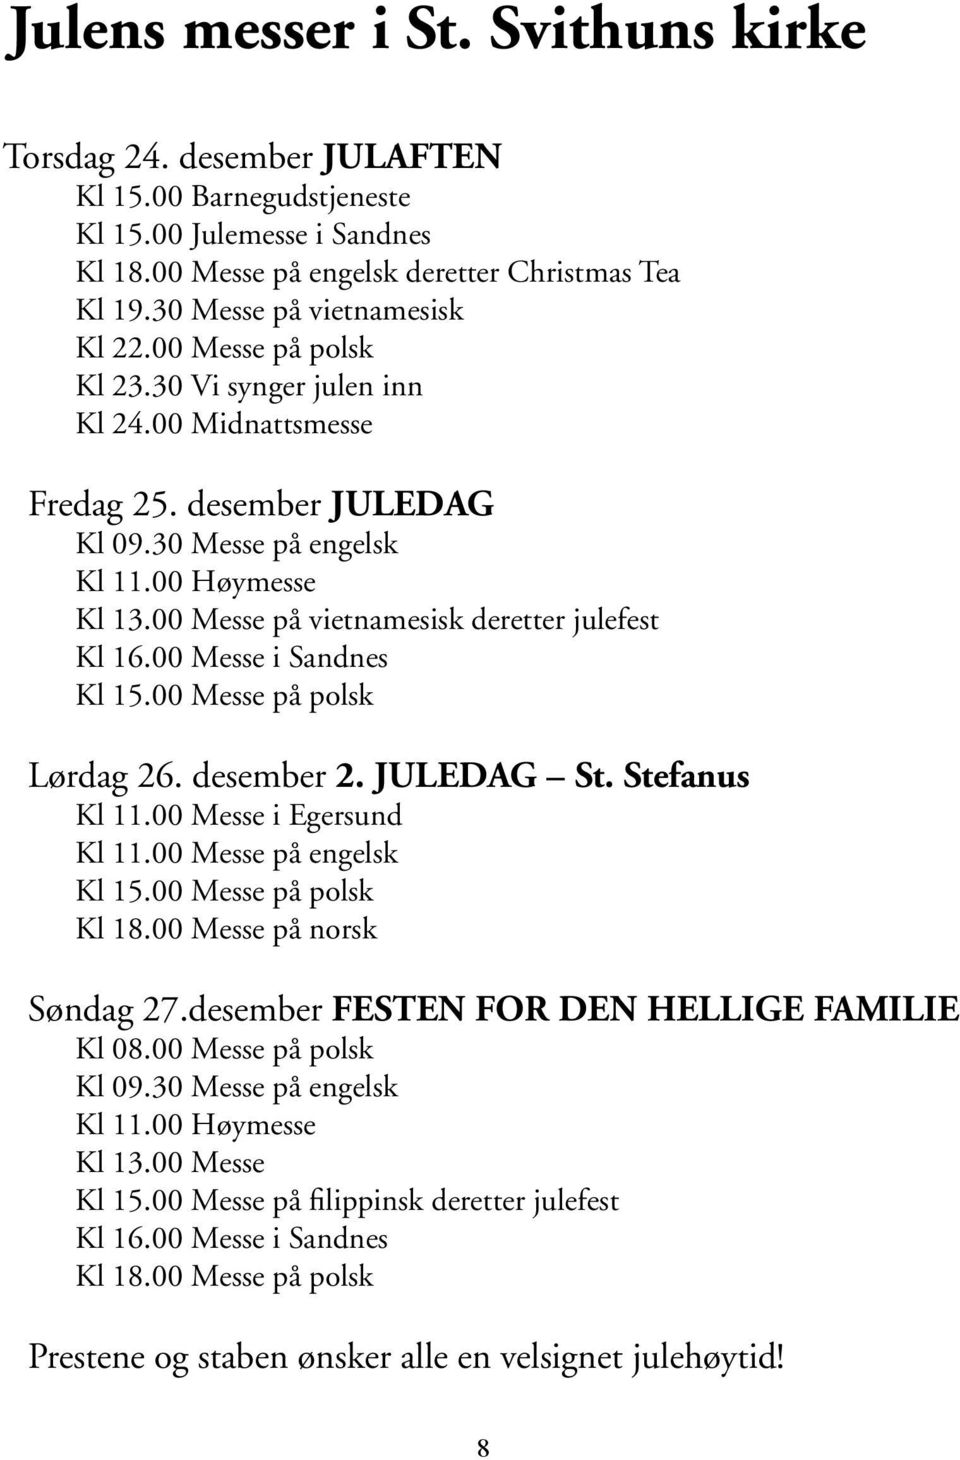 00 Messe på vietnamesisk deretter julefest Kl 16.00 Messe i Sandnes Kl 15.00 Messe på polsk Lørdag 26. desember 2. JULEDAG St. Stefanus Kl 11.00 Messe i Egersund Kl 11.00 Messe på engelsk Kl 15.